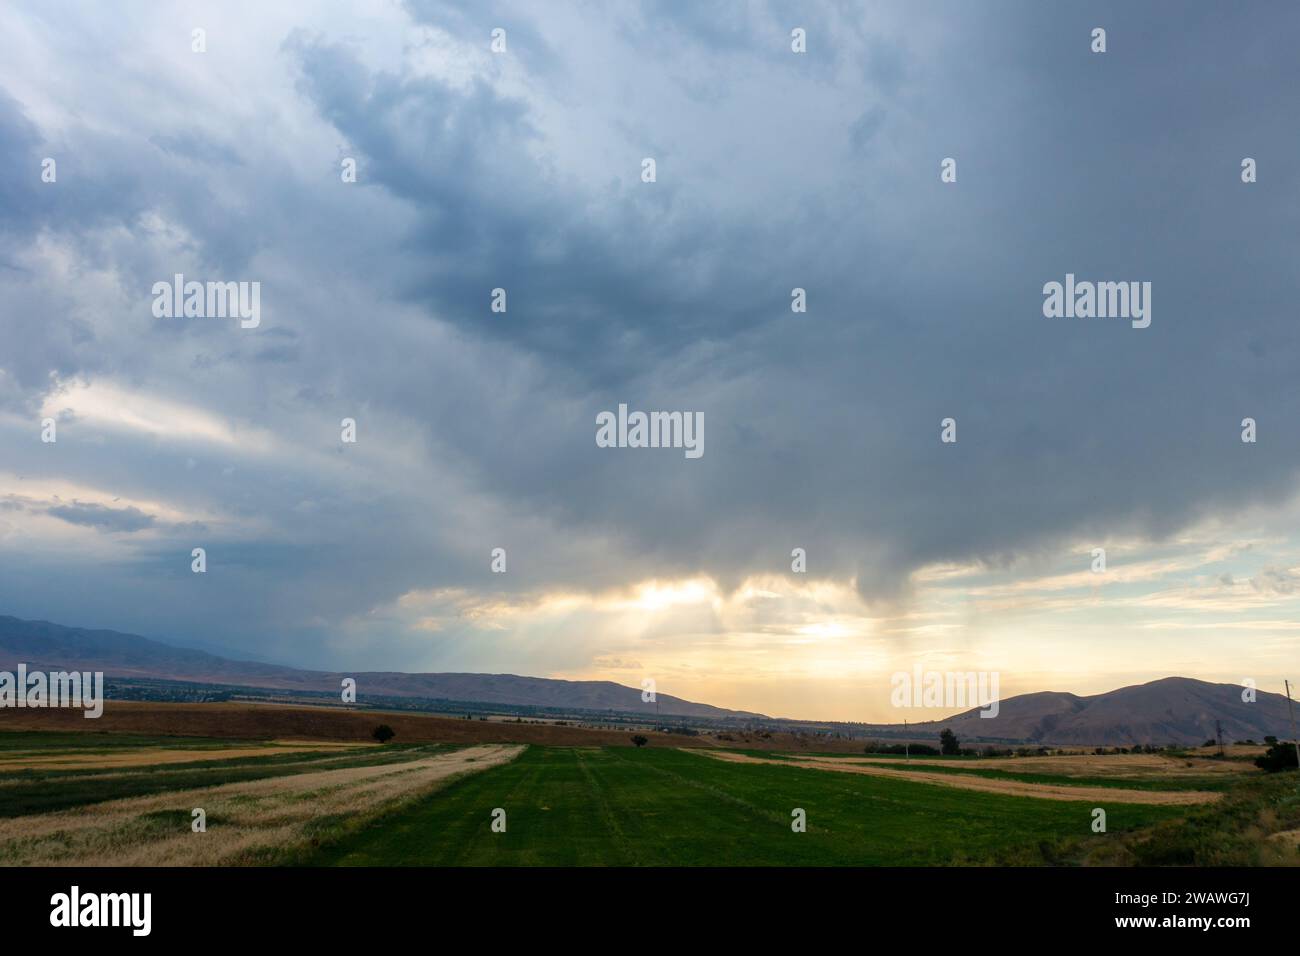 Nuages d'orage. Nuages dans le ciel, ciel sombre. arrière-plan naturel Banque D'Images